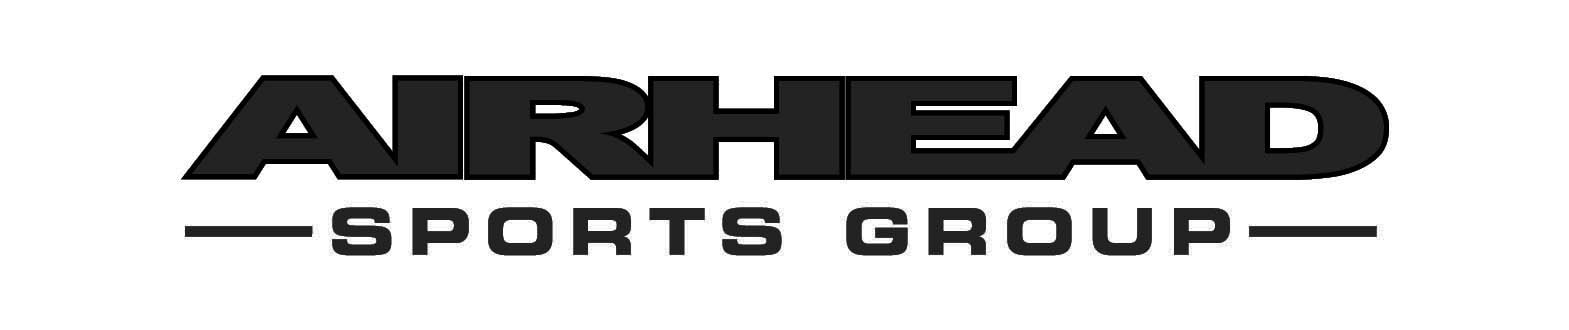 Airhead Sports Group logo